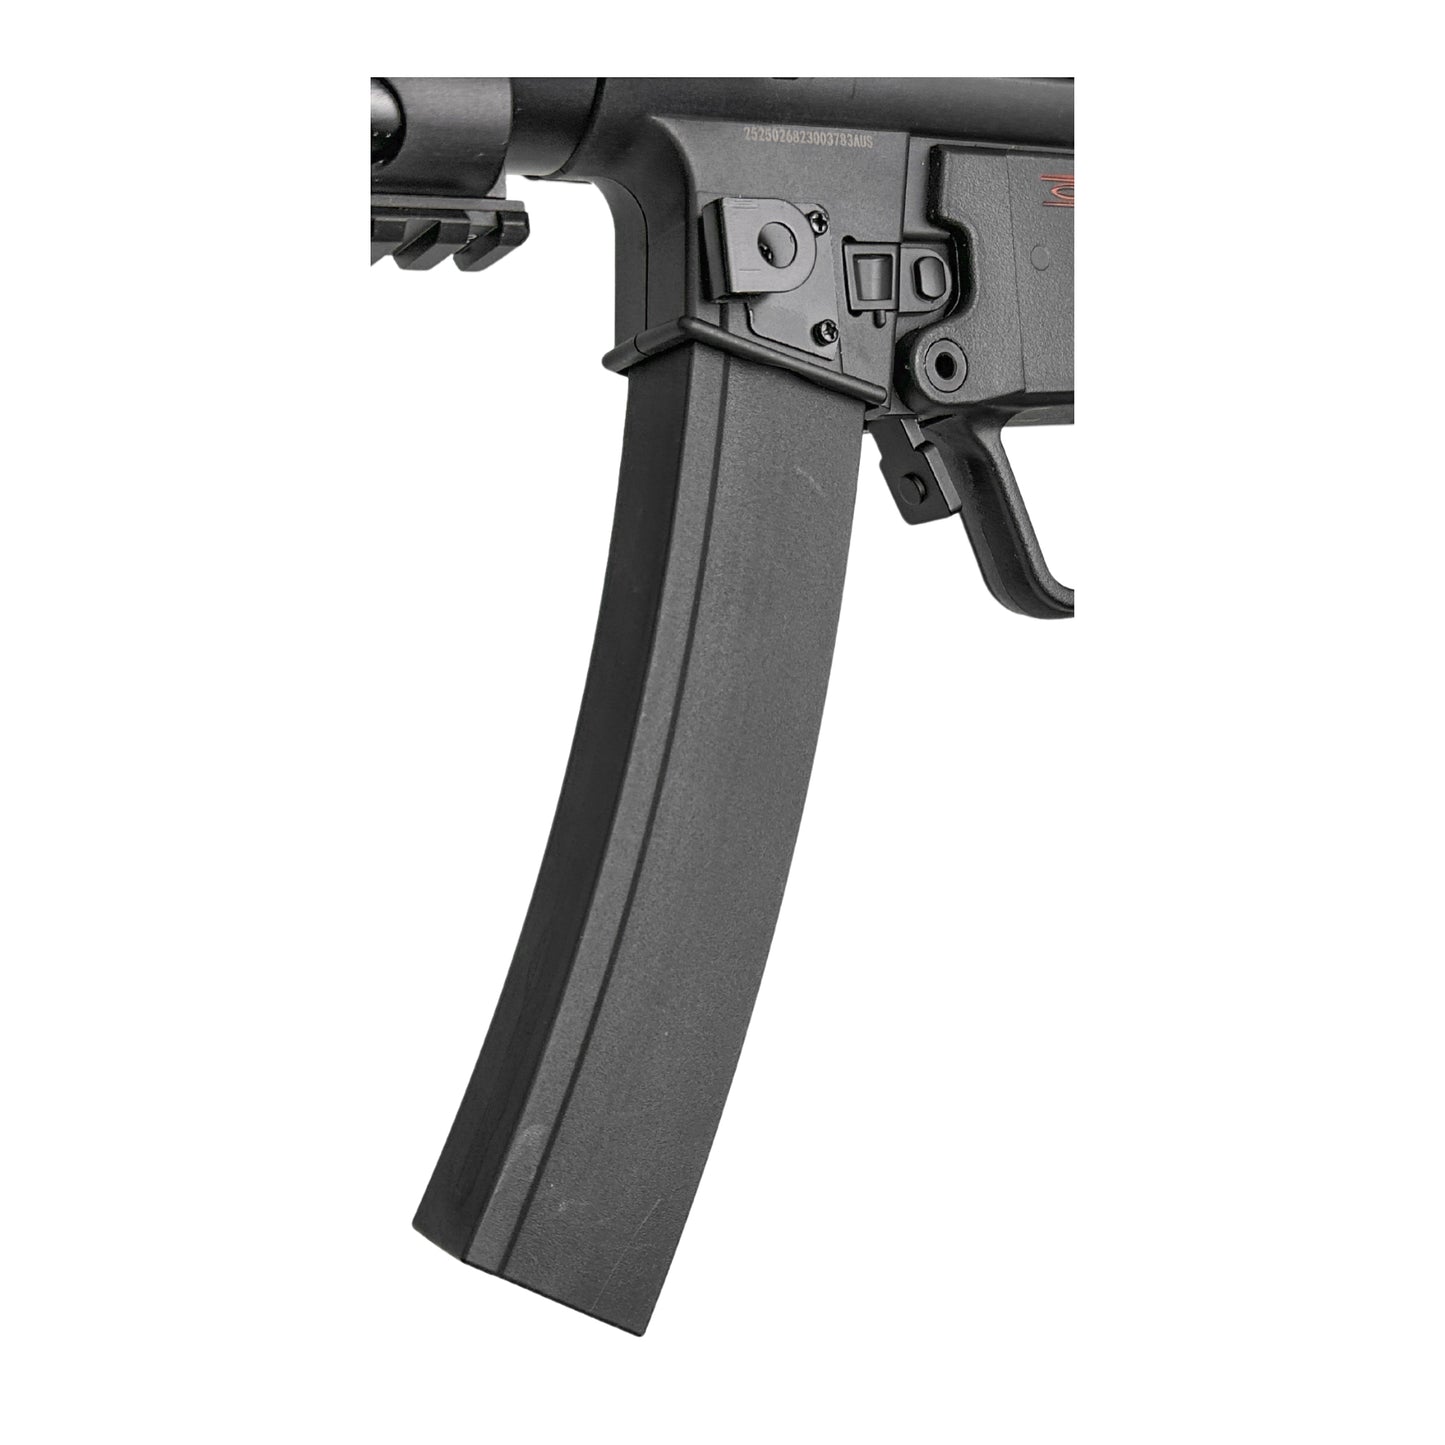 "SWAT MP5 Tactical" Comp GBU Custom - Gel Blaster (Metal)